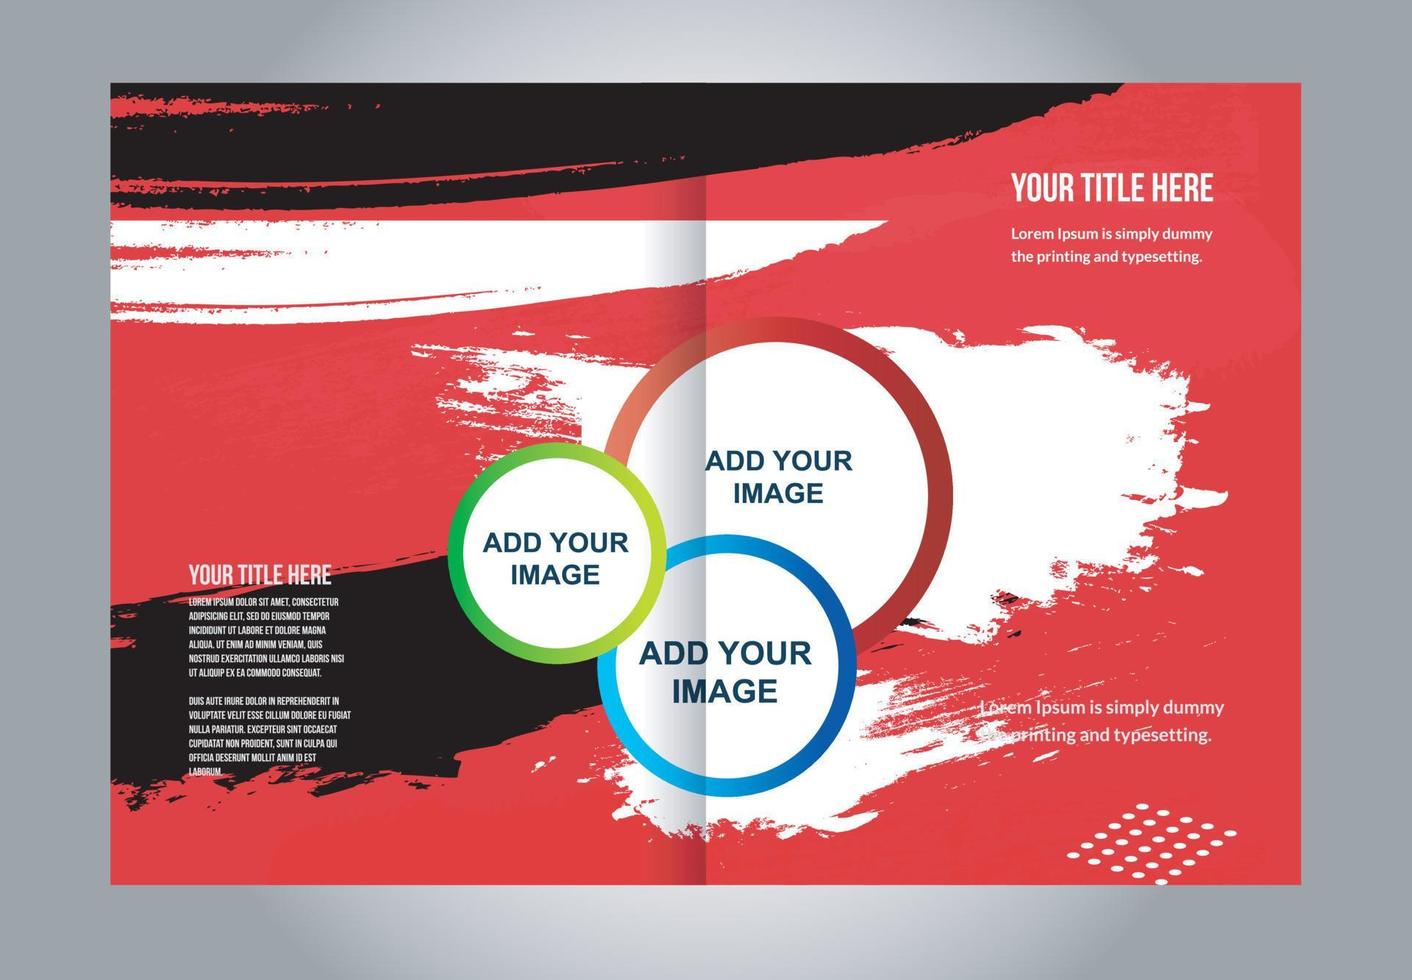 flyer professionnel, modèle de conception de brochure d'entreprise vecteur